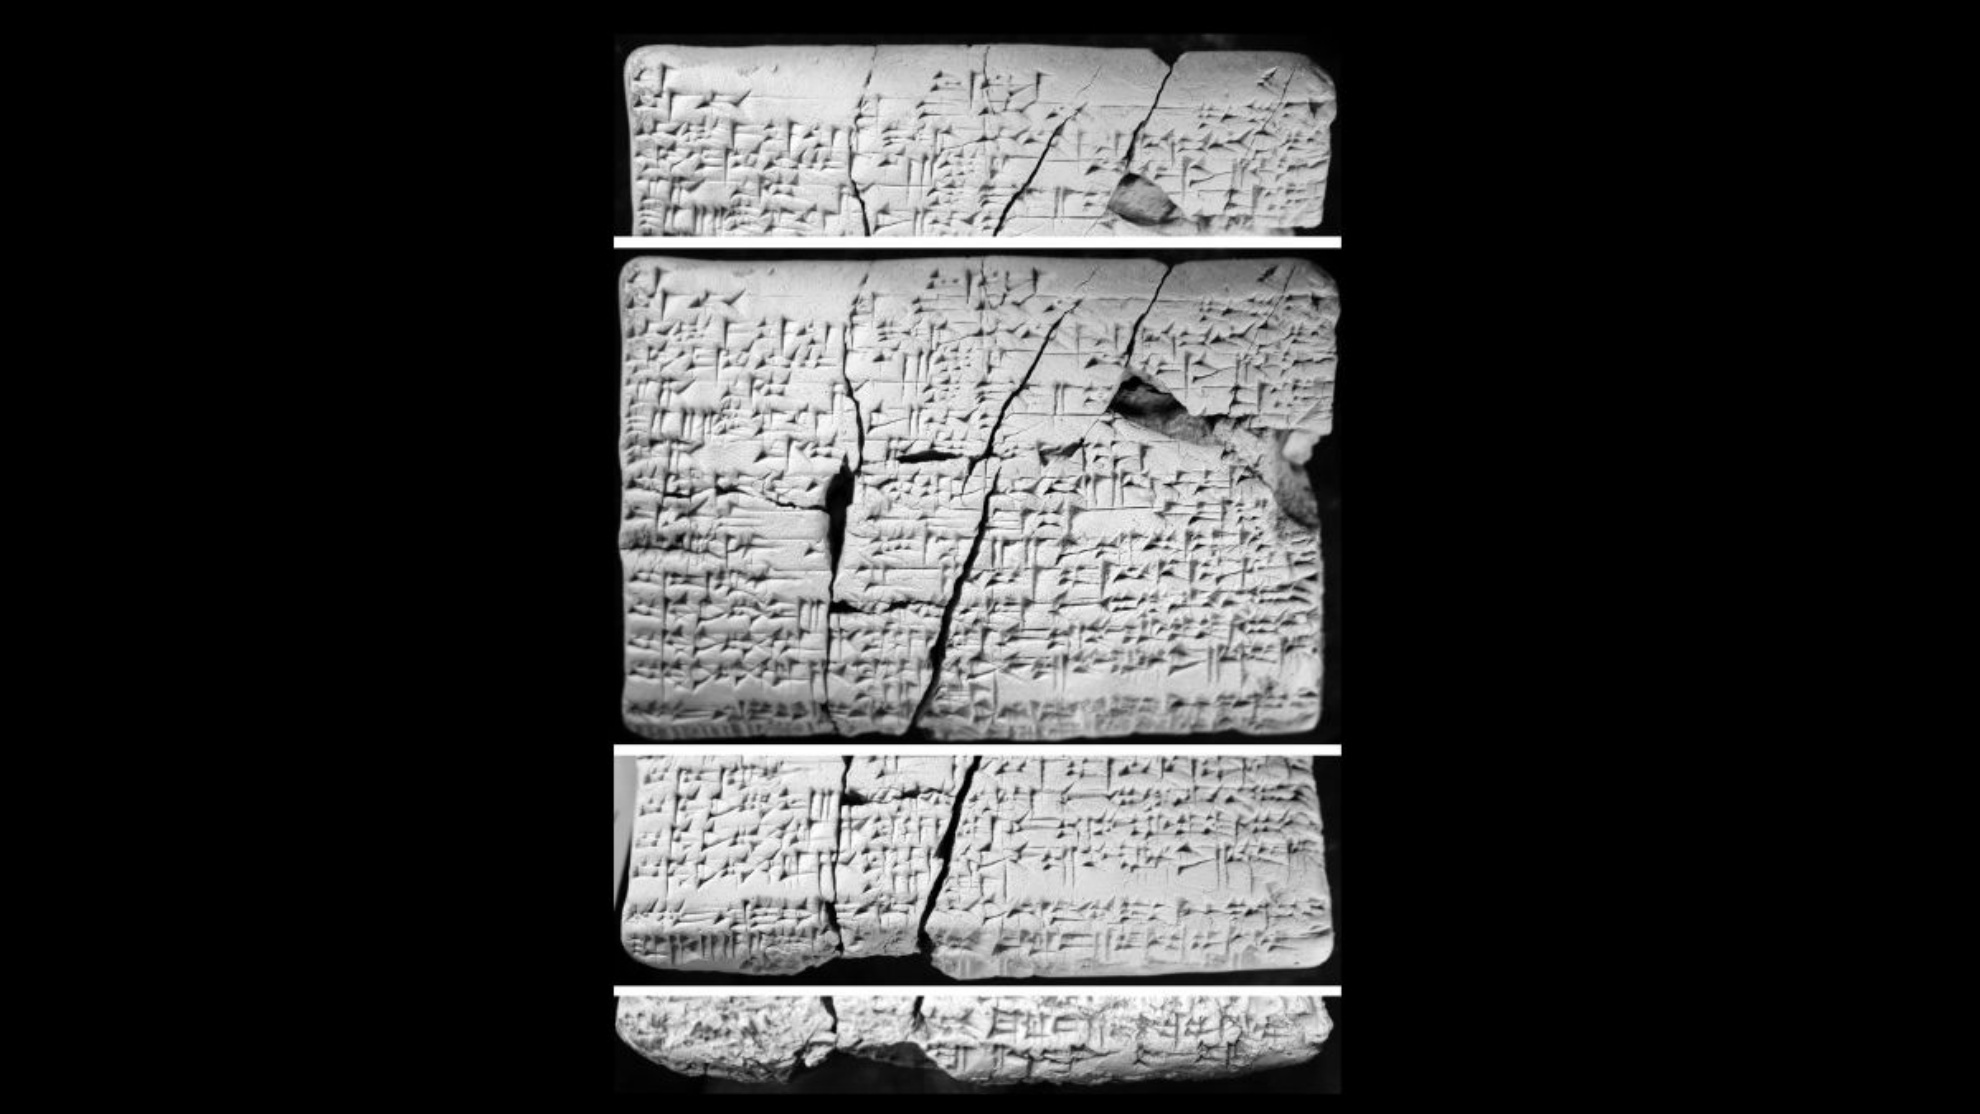 這些石板是大約 30 年前在伊拉克發現的。 學者們於 2016 年開始研究它們，發現它們包含“失落的”亞摩利語的阿卡德語細節。